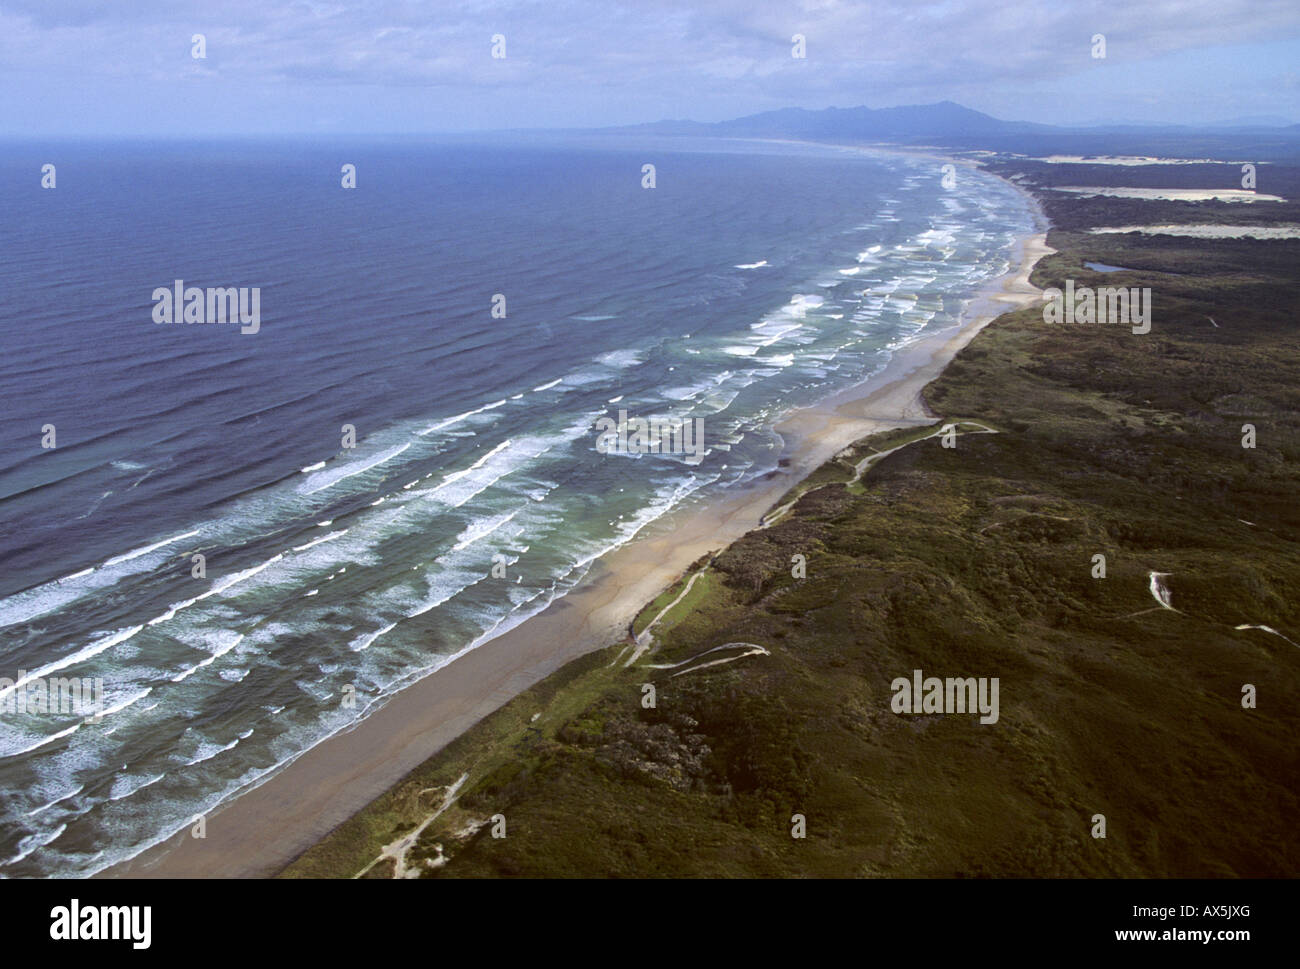 Aerial view of the west coast of Tasmania near Strahan, Tasmania, Australia Stock Photo